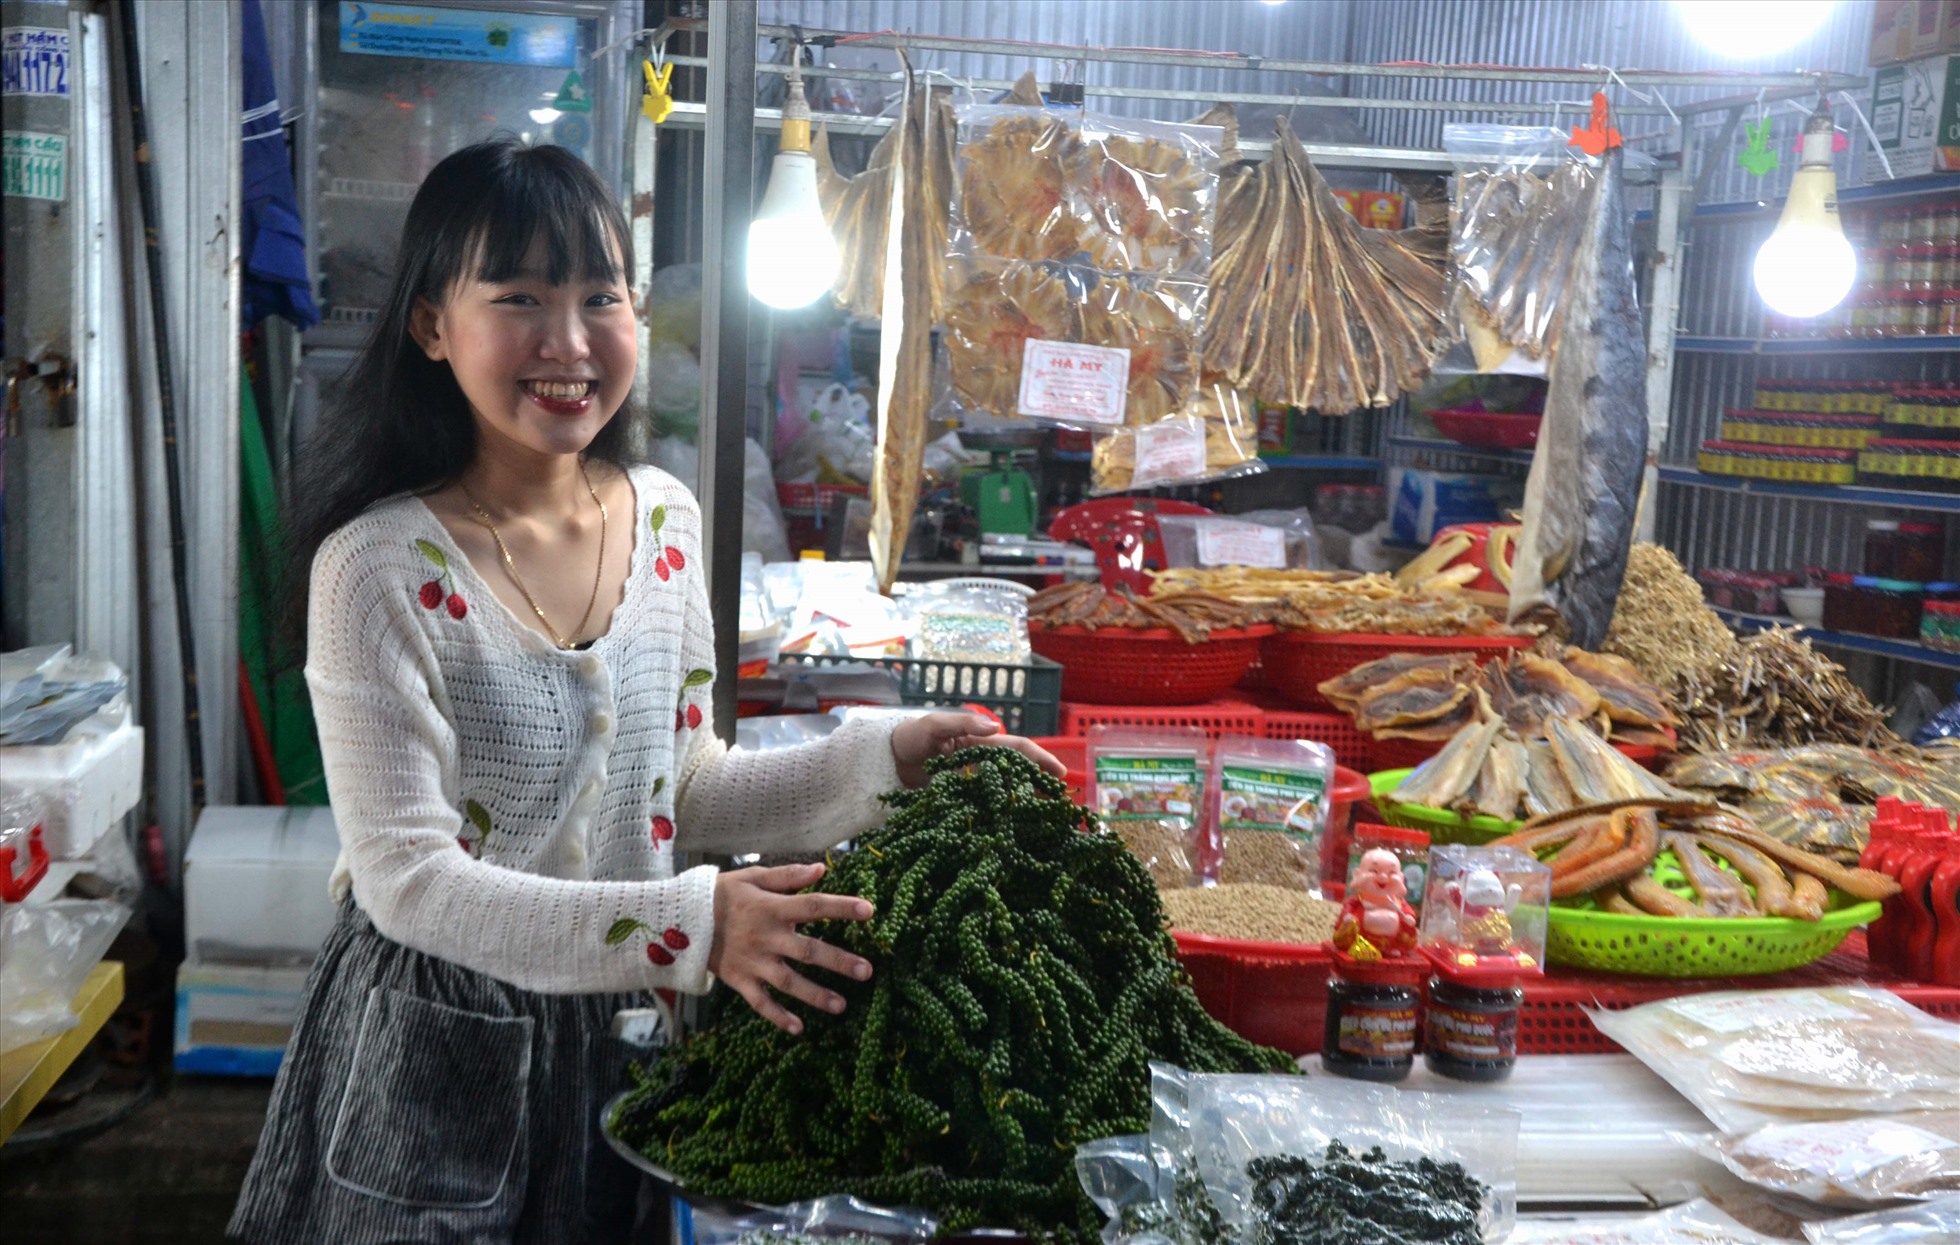 Mặt hàng tiêu xanh Phú Quốc, đặc sản nổi tiếng của Đảo Ngọc cũng được trình bày hấp dẫn tại chợ đêm Phú Quốc.